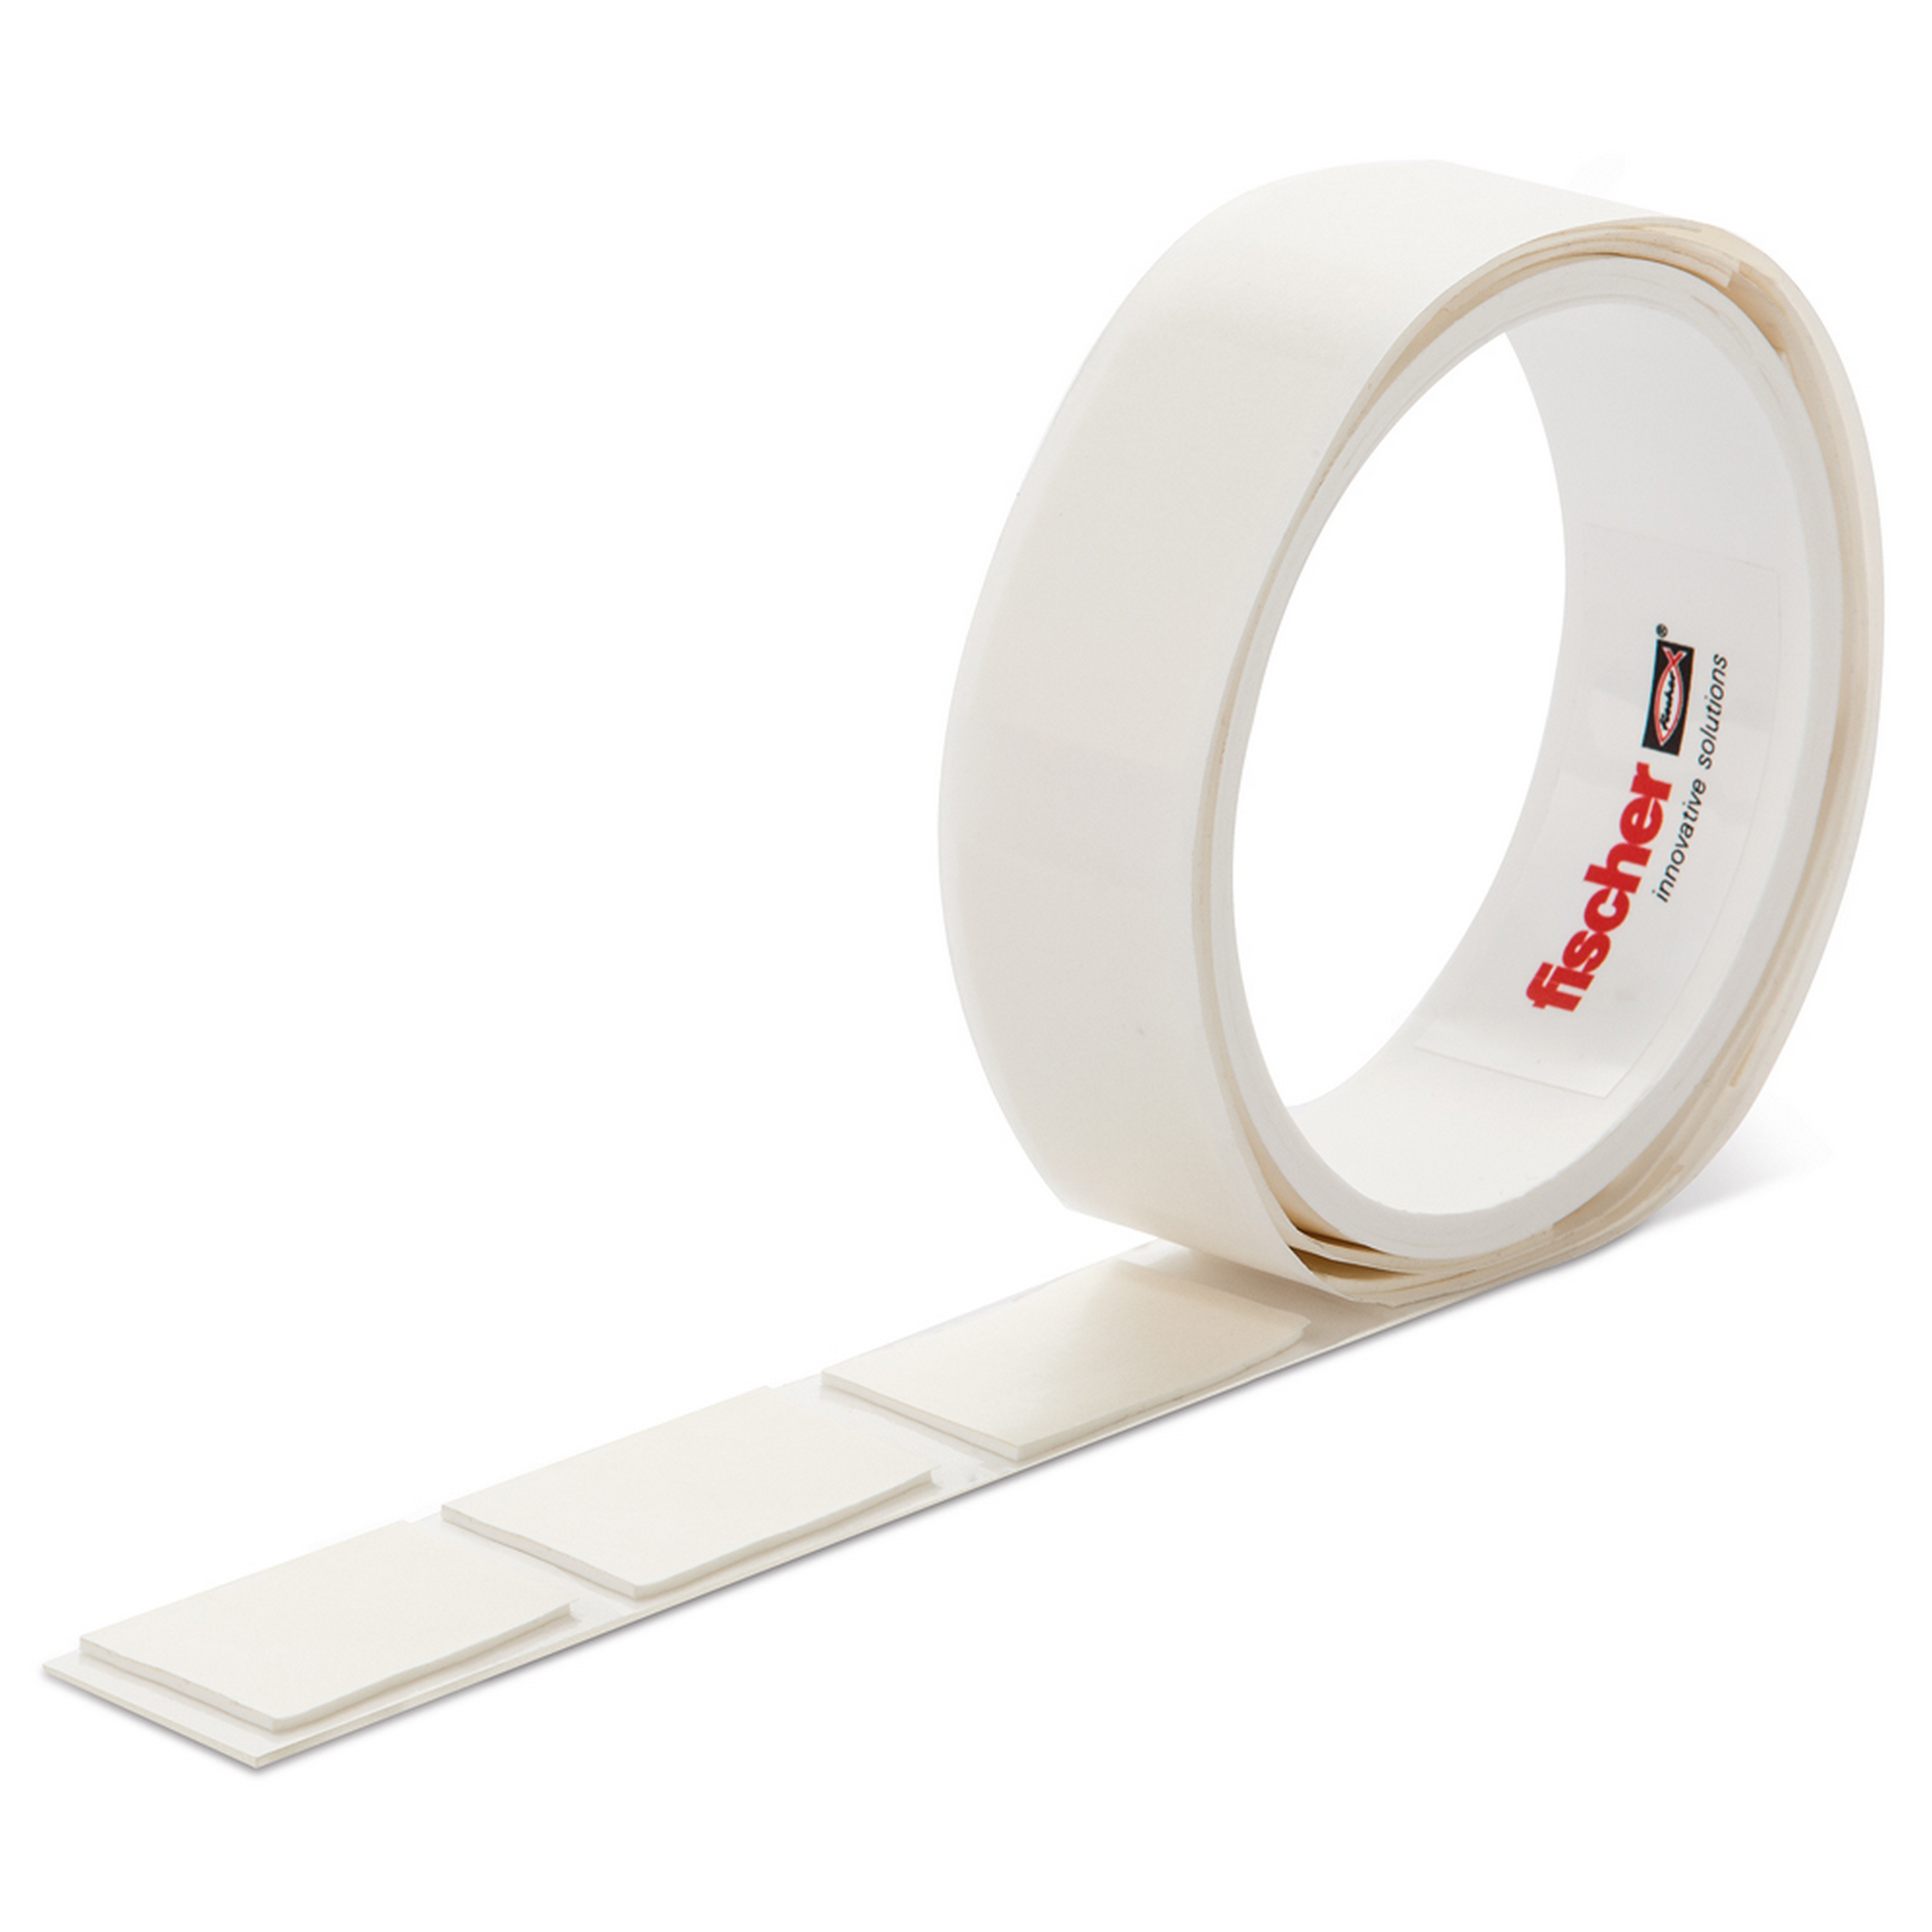 Doppelseitiges Klebeband Abklebeband Tape 24 mm x 10 m weiß universal |  STABILO mehr als nur Baumarkt!